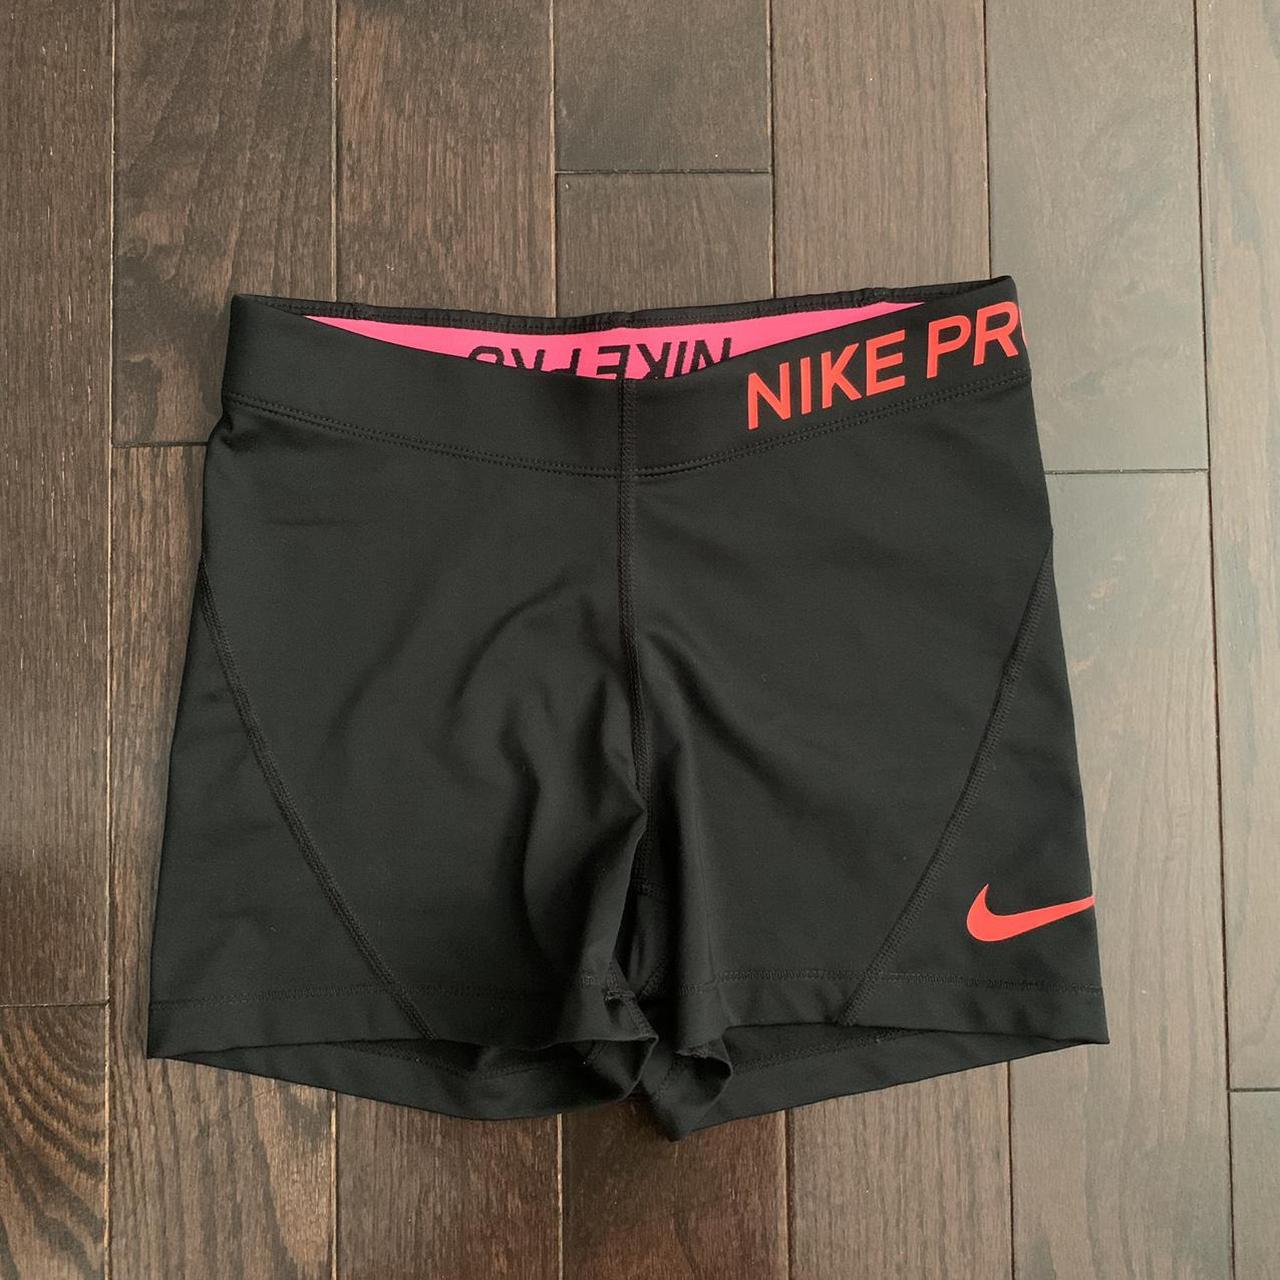 Product Image 1 - Nike Pro Shorts

• Good condition
•